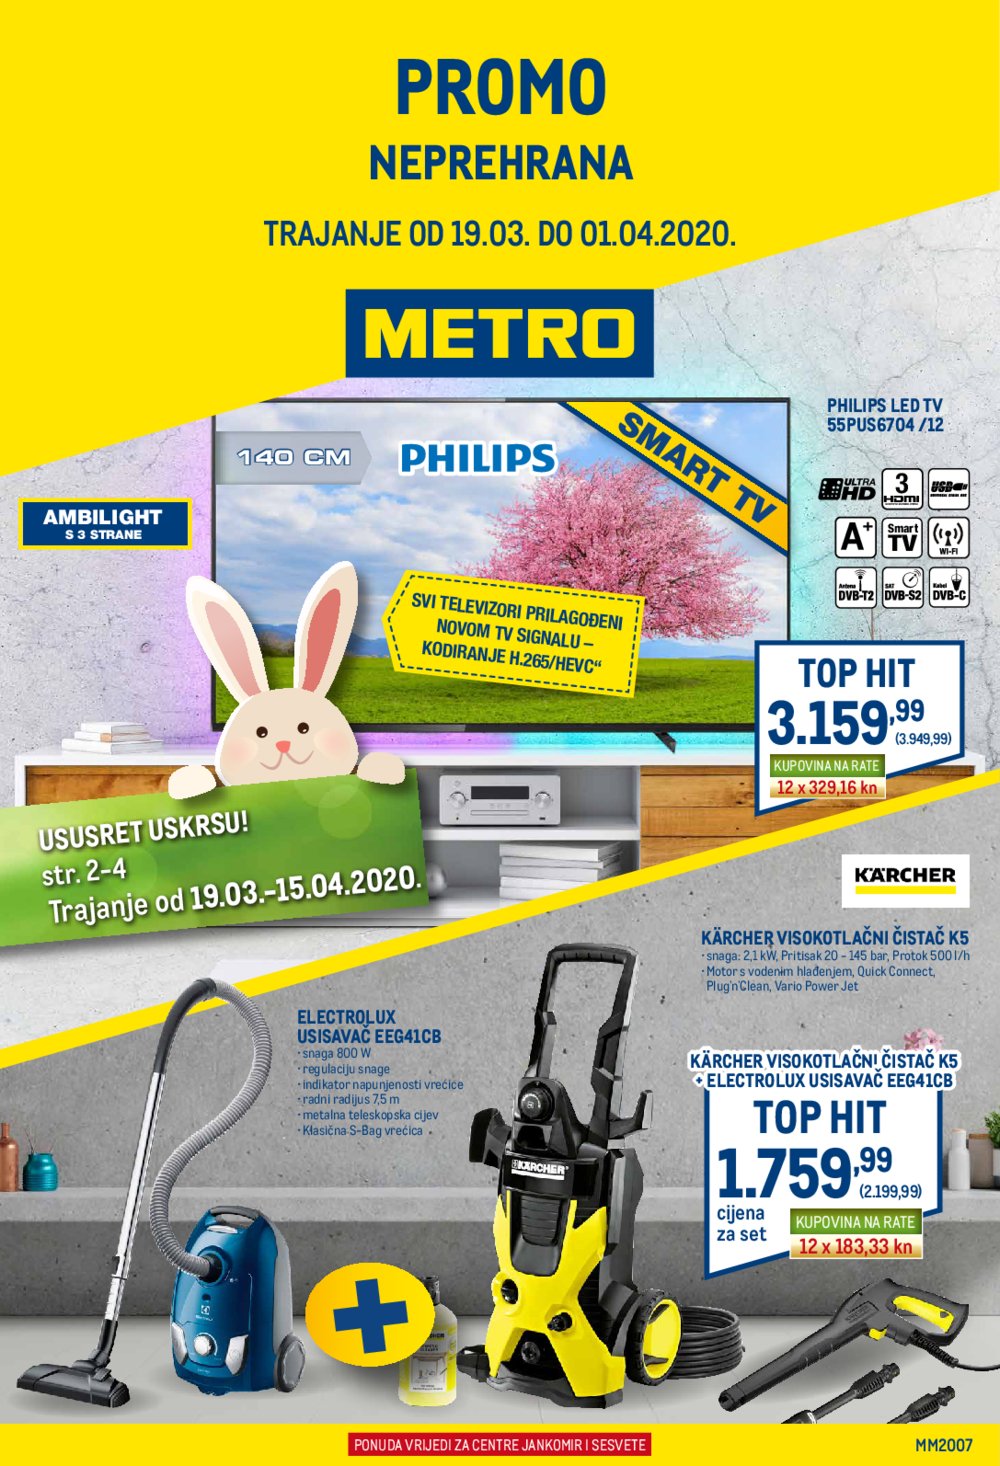 Metro katalog Neprehrana 19.03.-01.04.2020. Zg